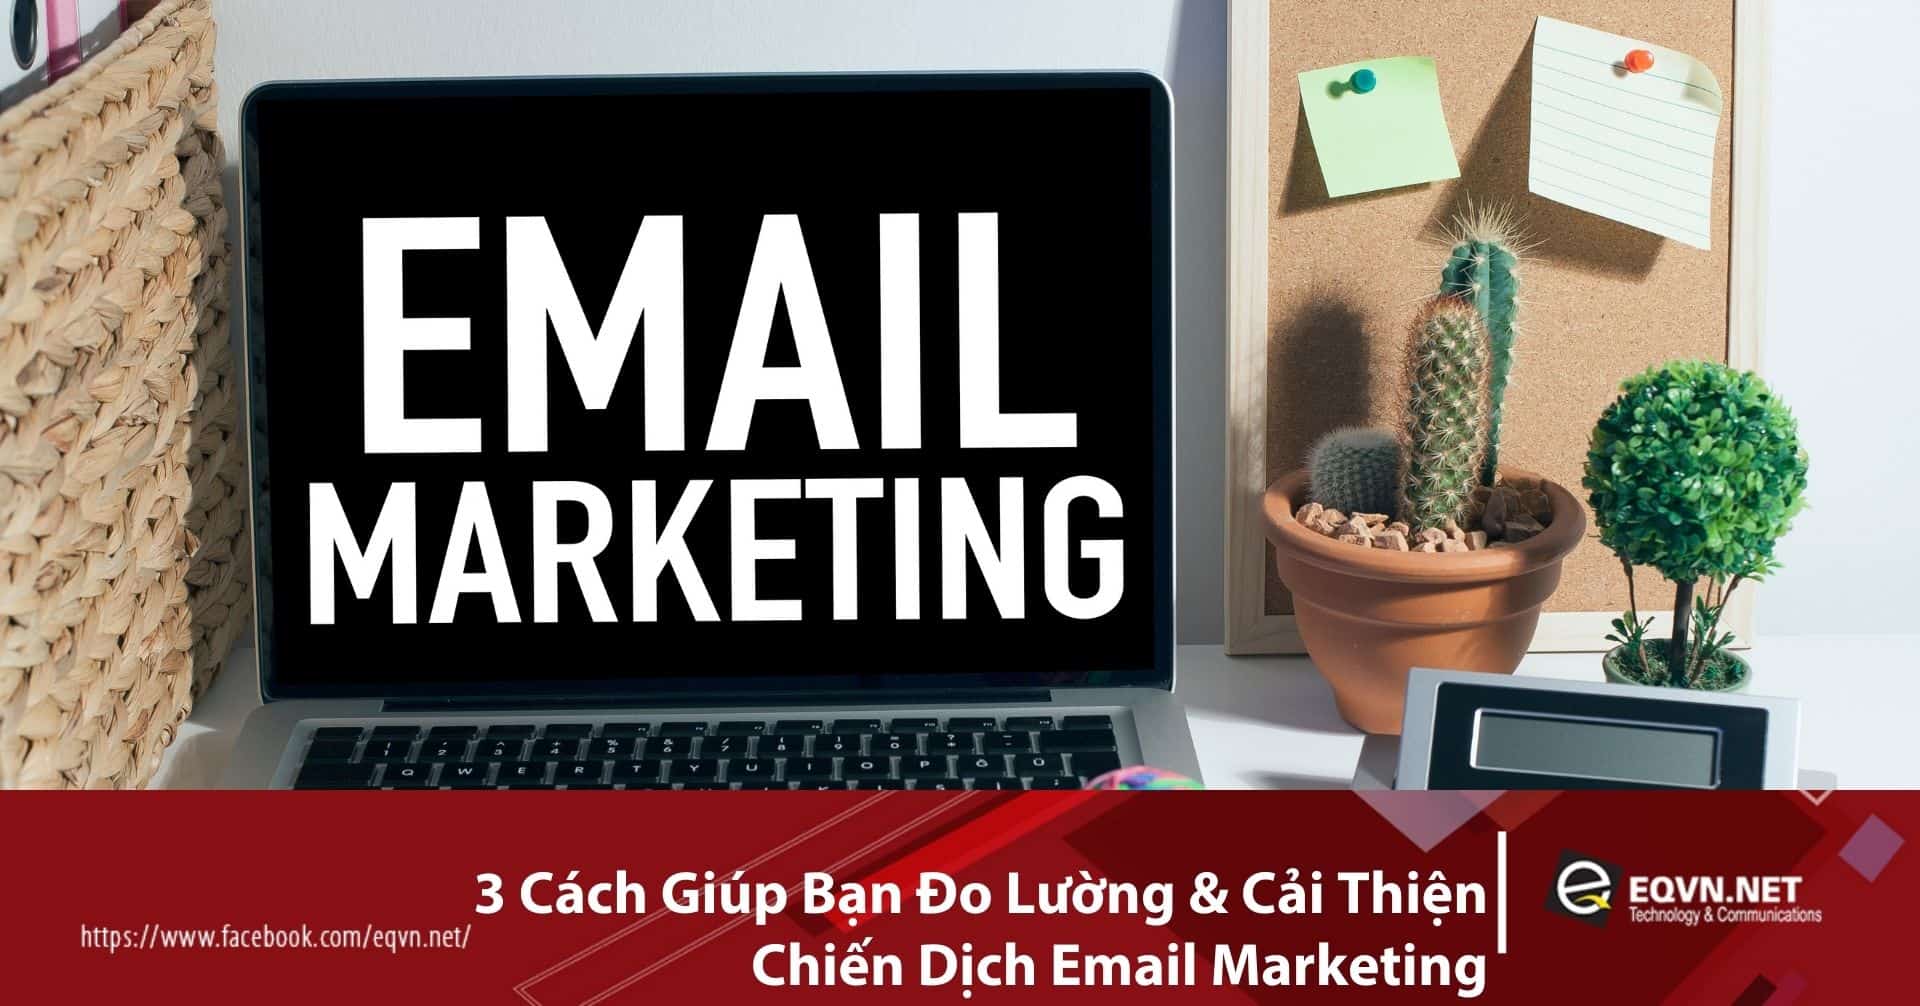 3 Cách Giúp Bạn Đo Lường & Cải Thiện Chiến Dịch Email Marketing